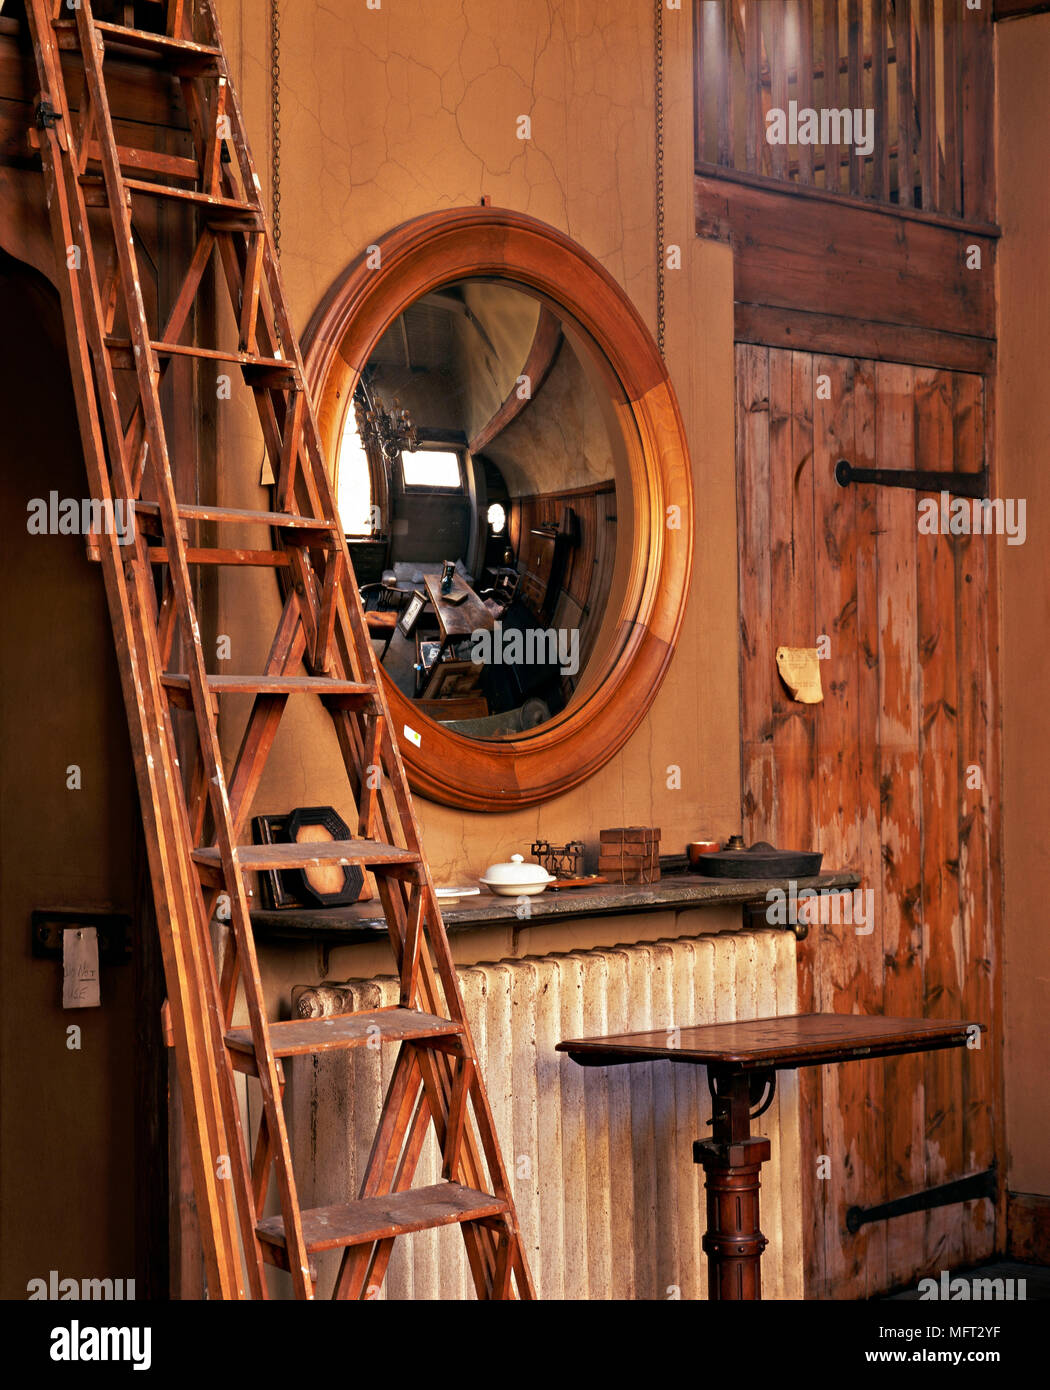 Traditionelle runde Spiegel mit Reflexion der Zimmer kühler Regal Leiter  Interieur detail Spiegel Holz natürliche Materialien Farben distressed  getragen Rustikal Stockfotografie - Alamy